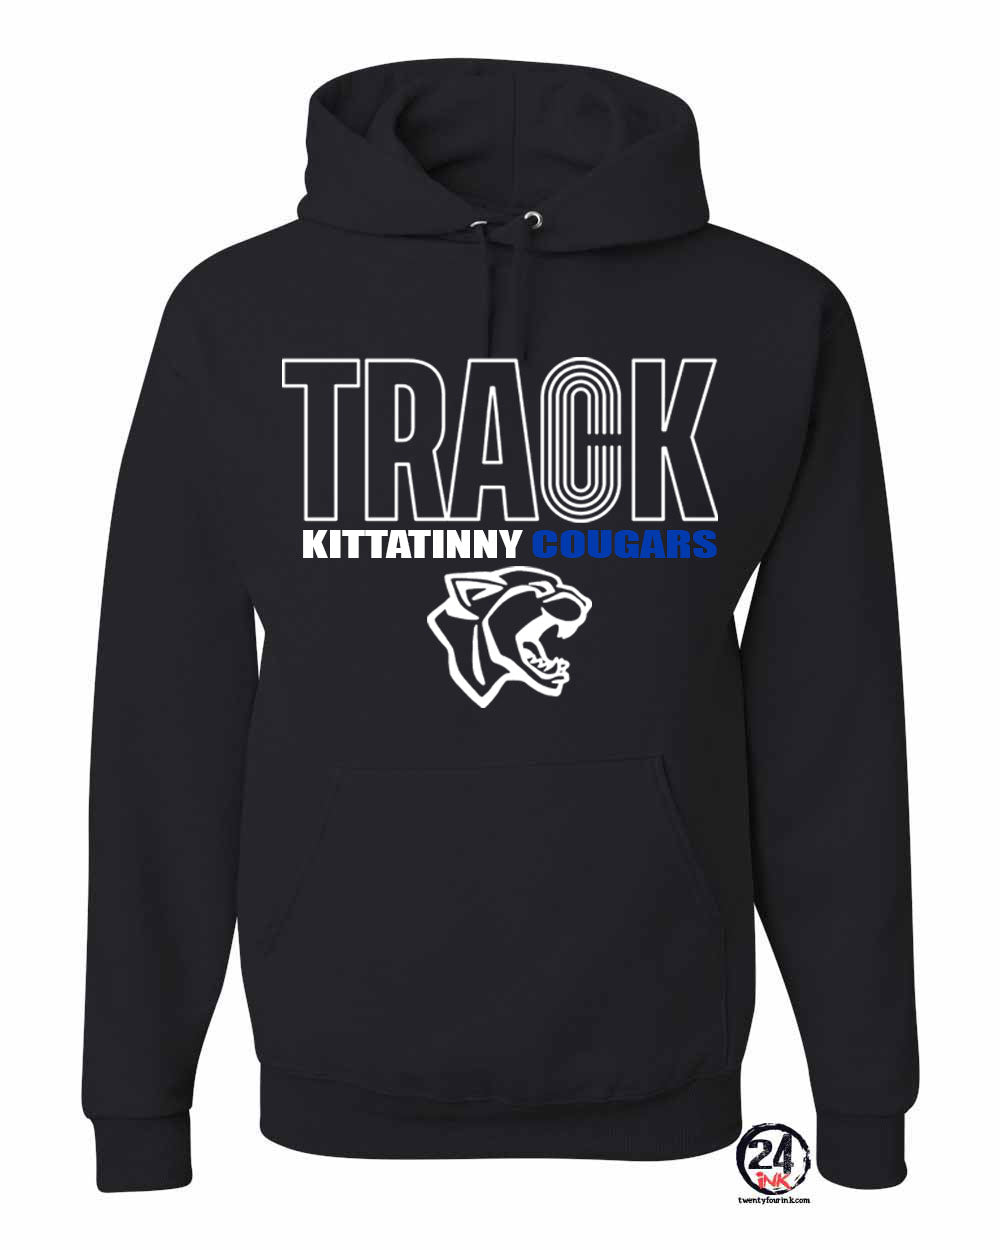 Kittatinny Track Design 1 Hooded Sweatshirt